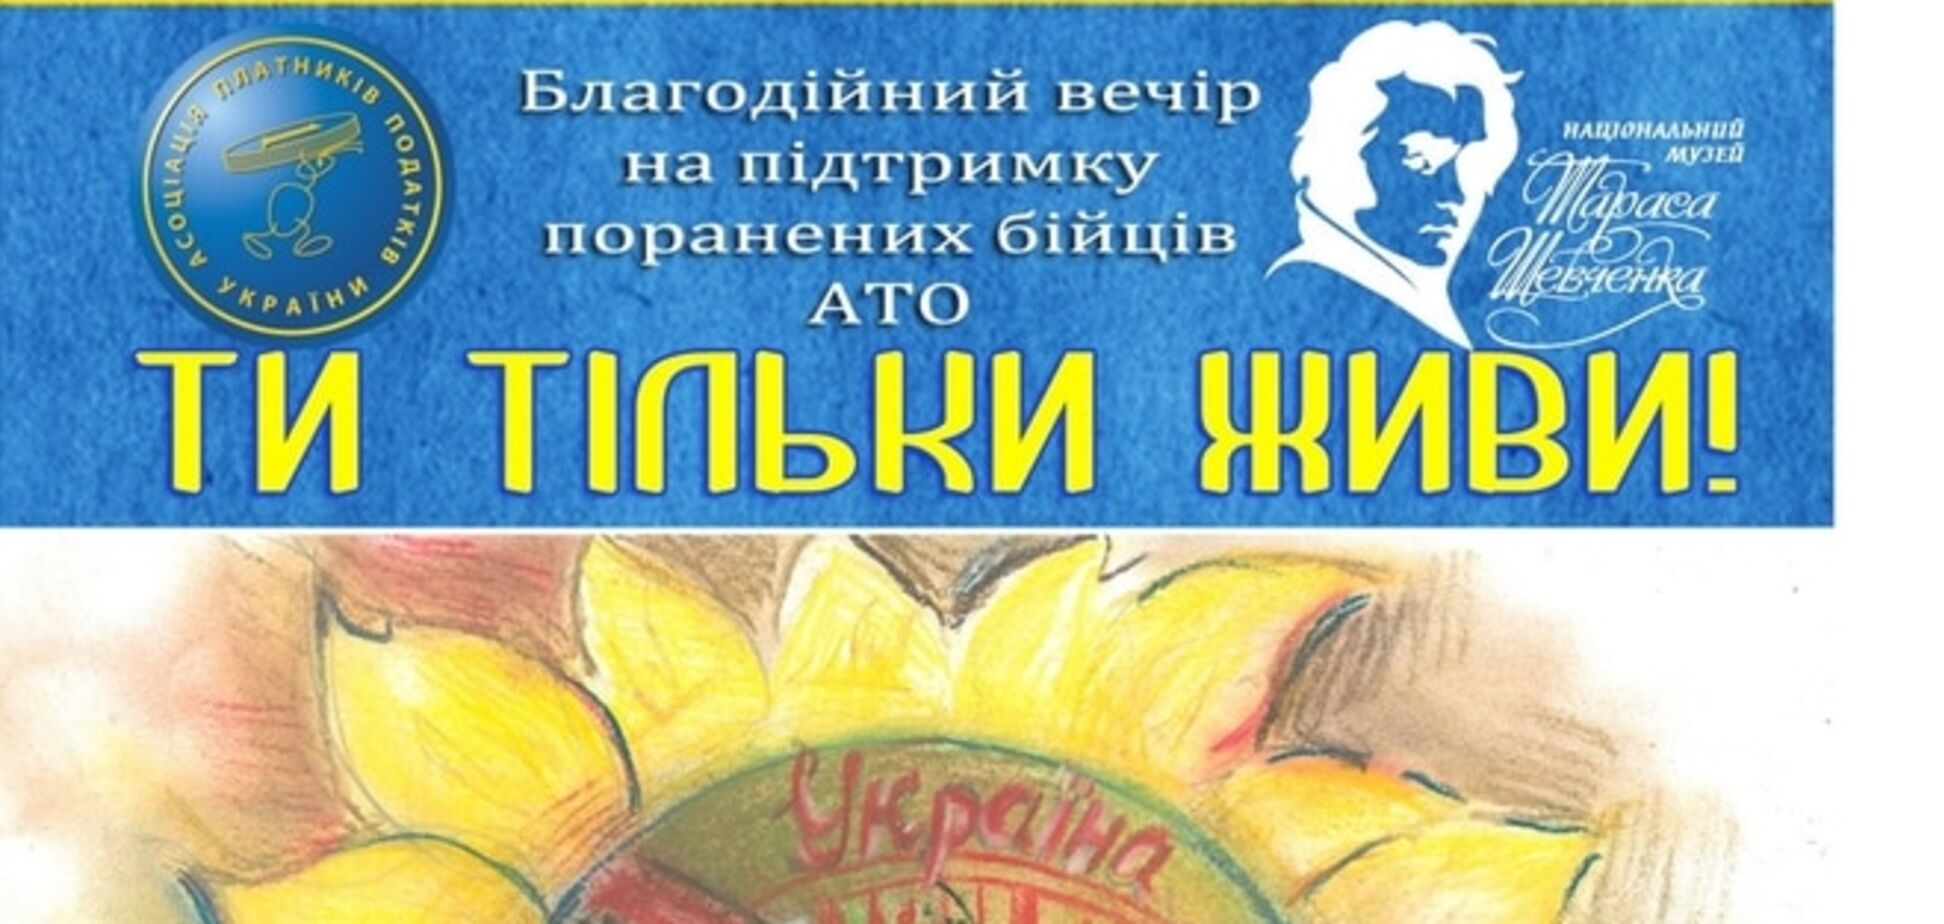 В Киеве состоится благотворительный вечер в поддержку раненых бойцов АТО 'Ти тільки живи!'